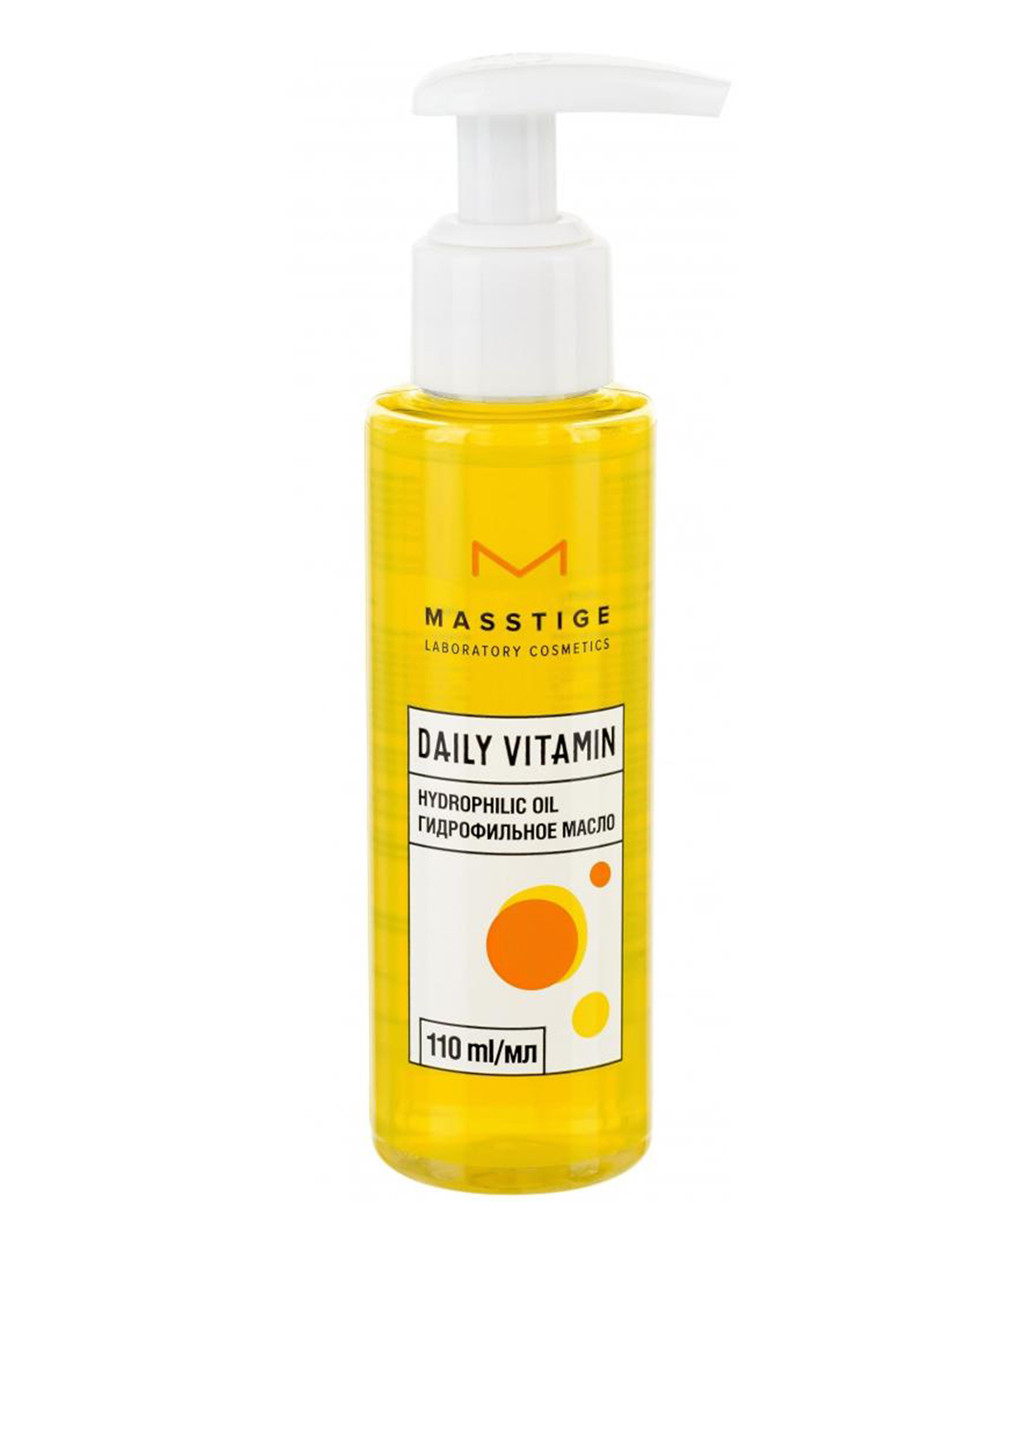 Гидрофильное масло для лица Daily Vitamin, 110 мл Masstige (146138302)